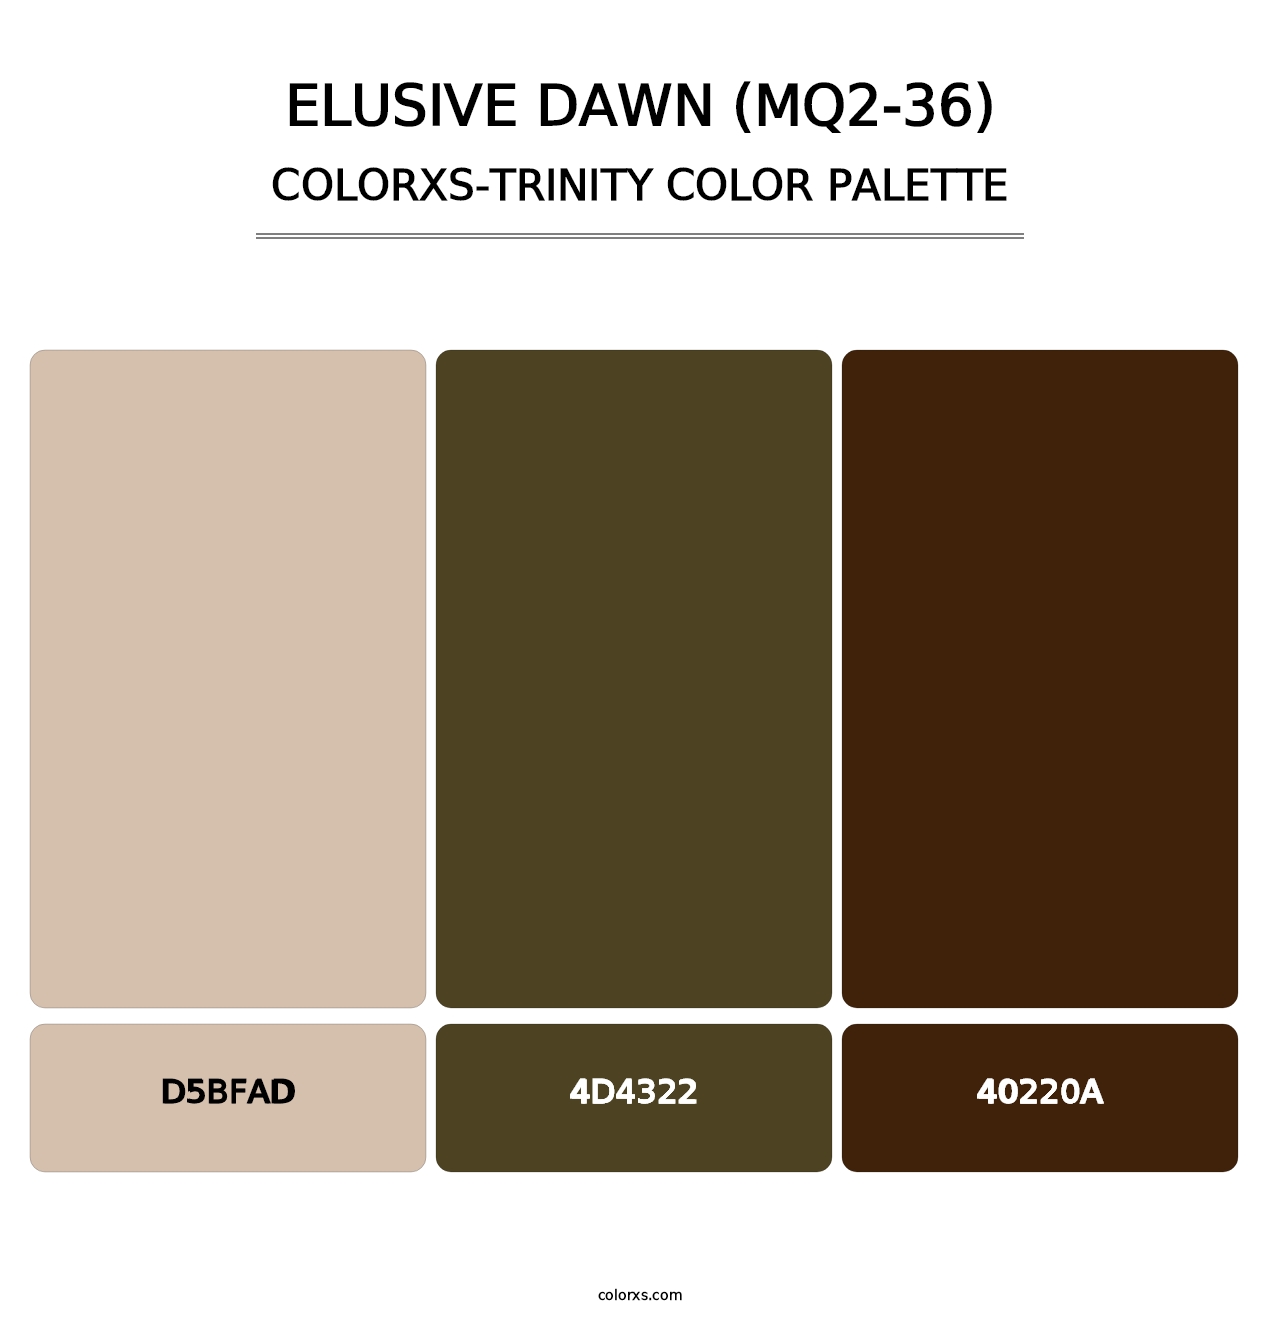 Elusive Dawn (MQ2-36) - Colorxs Trinity Palette